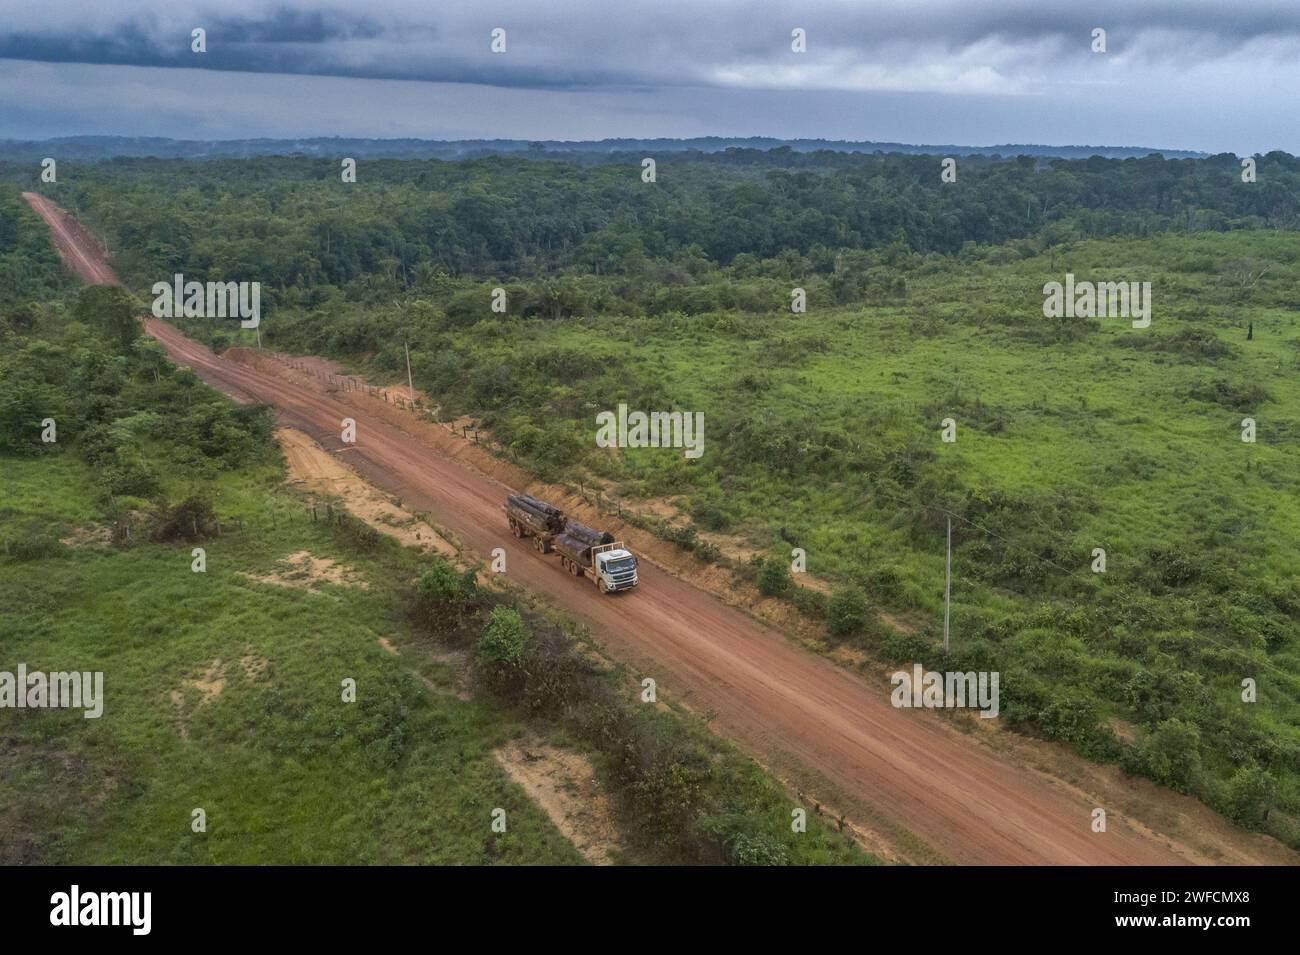 Vue drone d'un camion à double corps transportant des grumes de déforestation illégale sur l'autoroute BR-230 Transamazônica - Banque D'Images